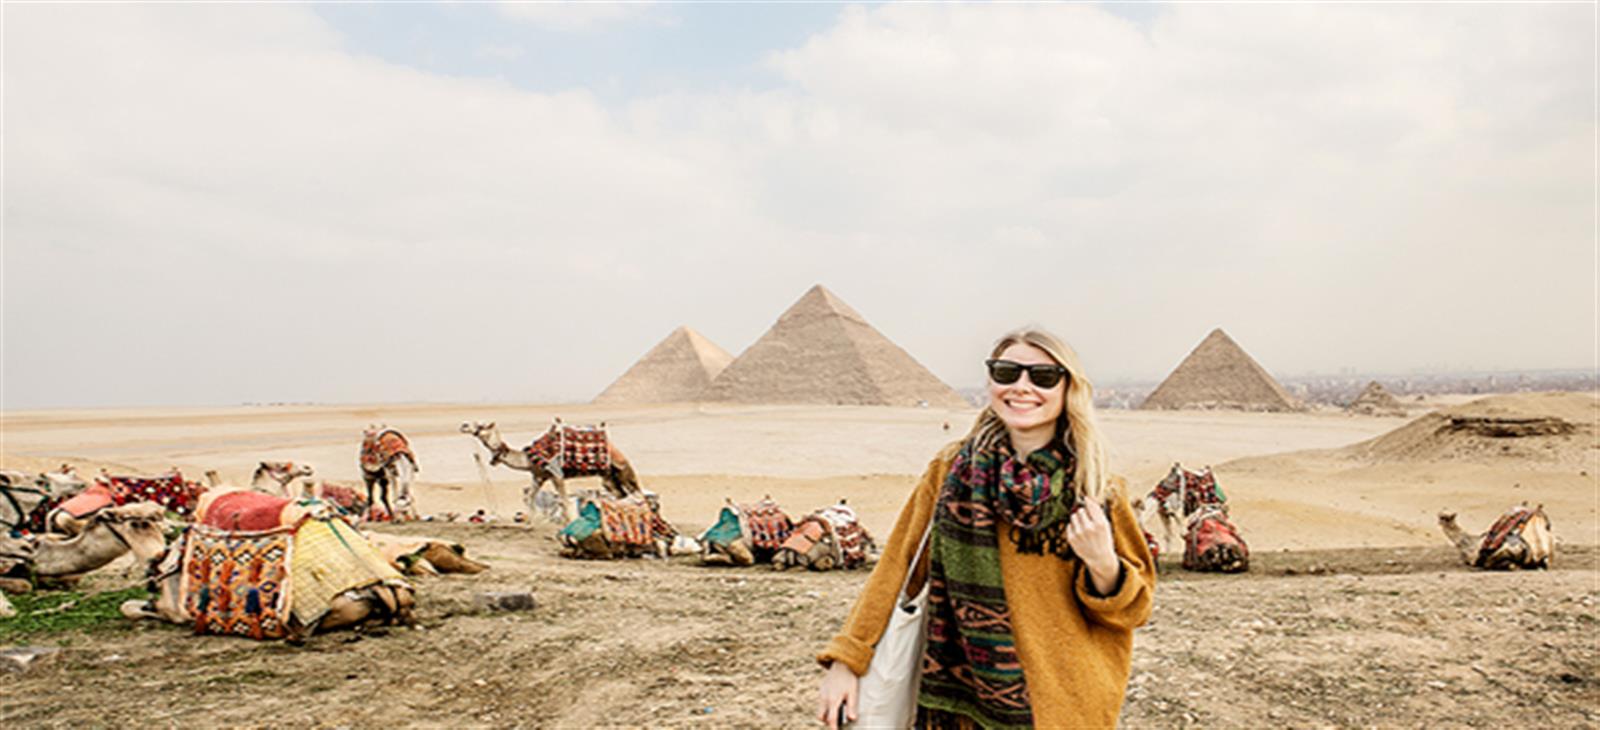 tour egypt pyramids